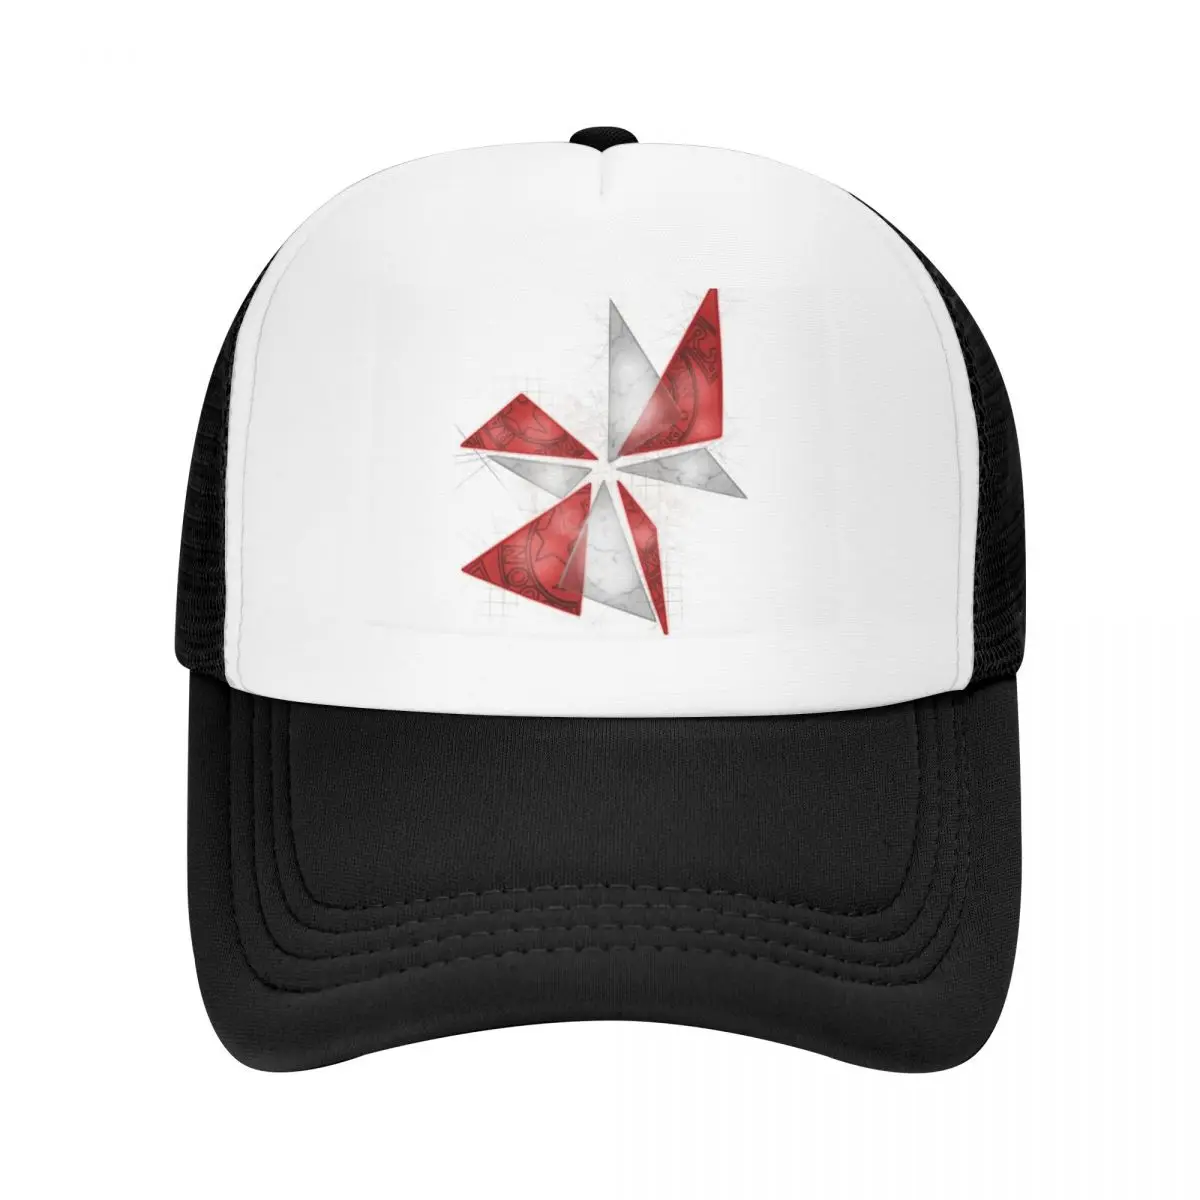 

Бейсбольная шапка The Cross с зонтиком Corporation сетчатая шапка для мужчин женщин мужчин хип-хоп кепки-тракер регулируемые кепки с козырьком